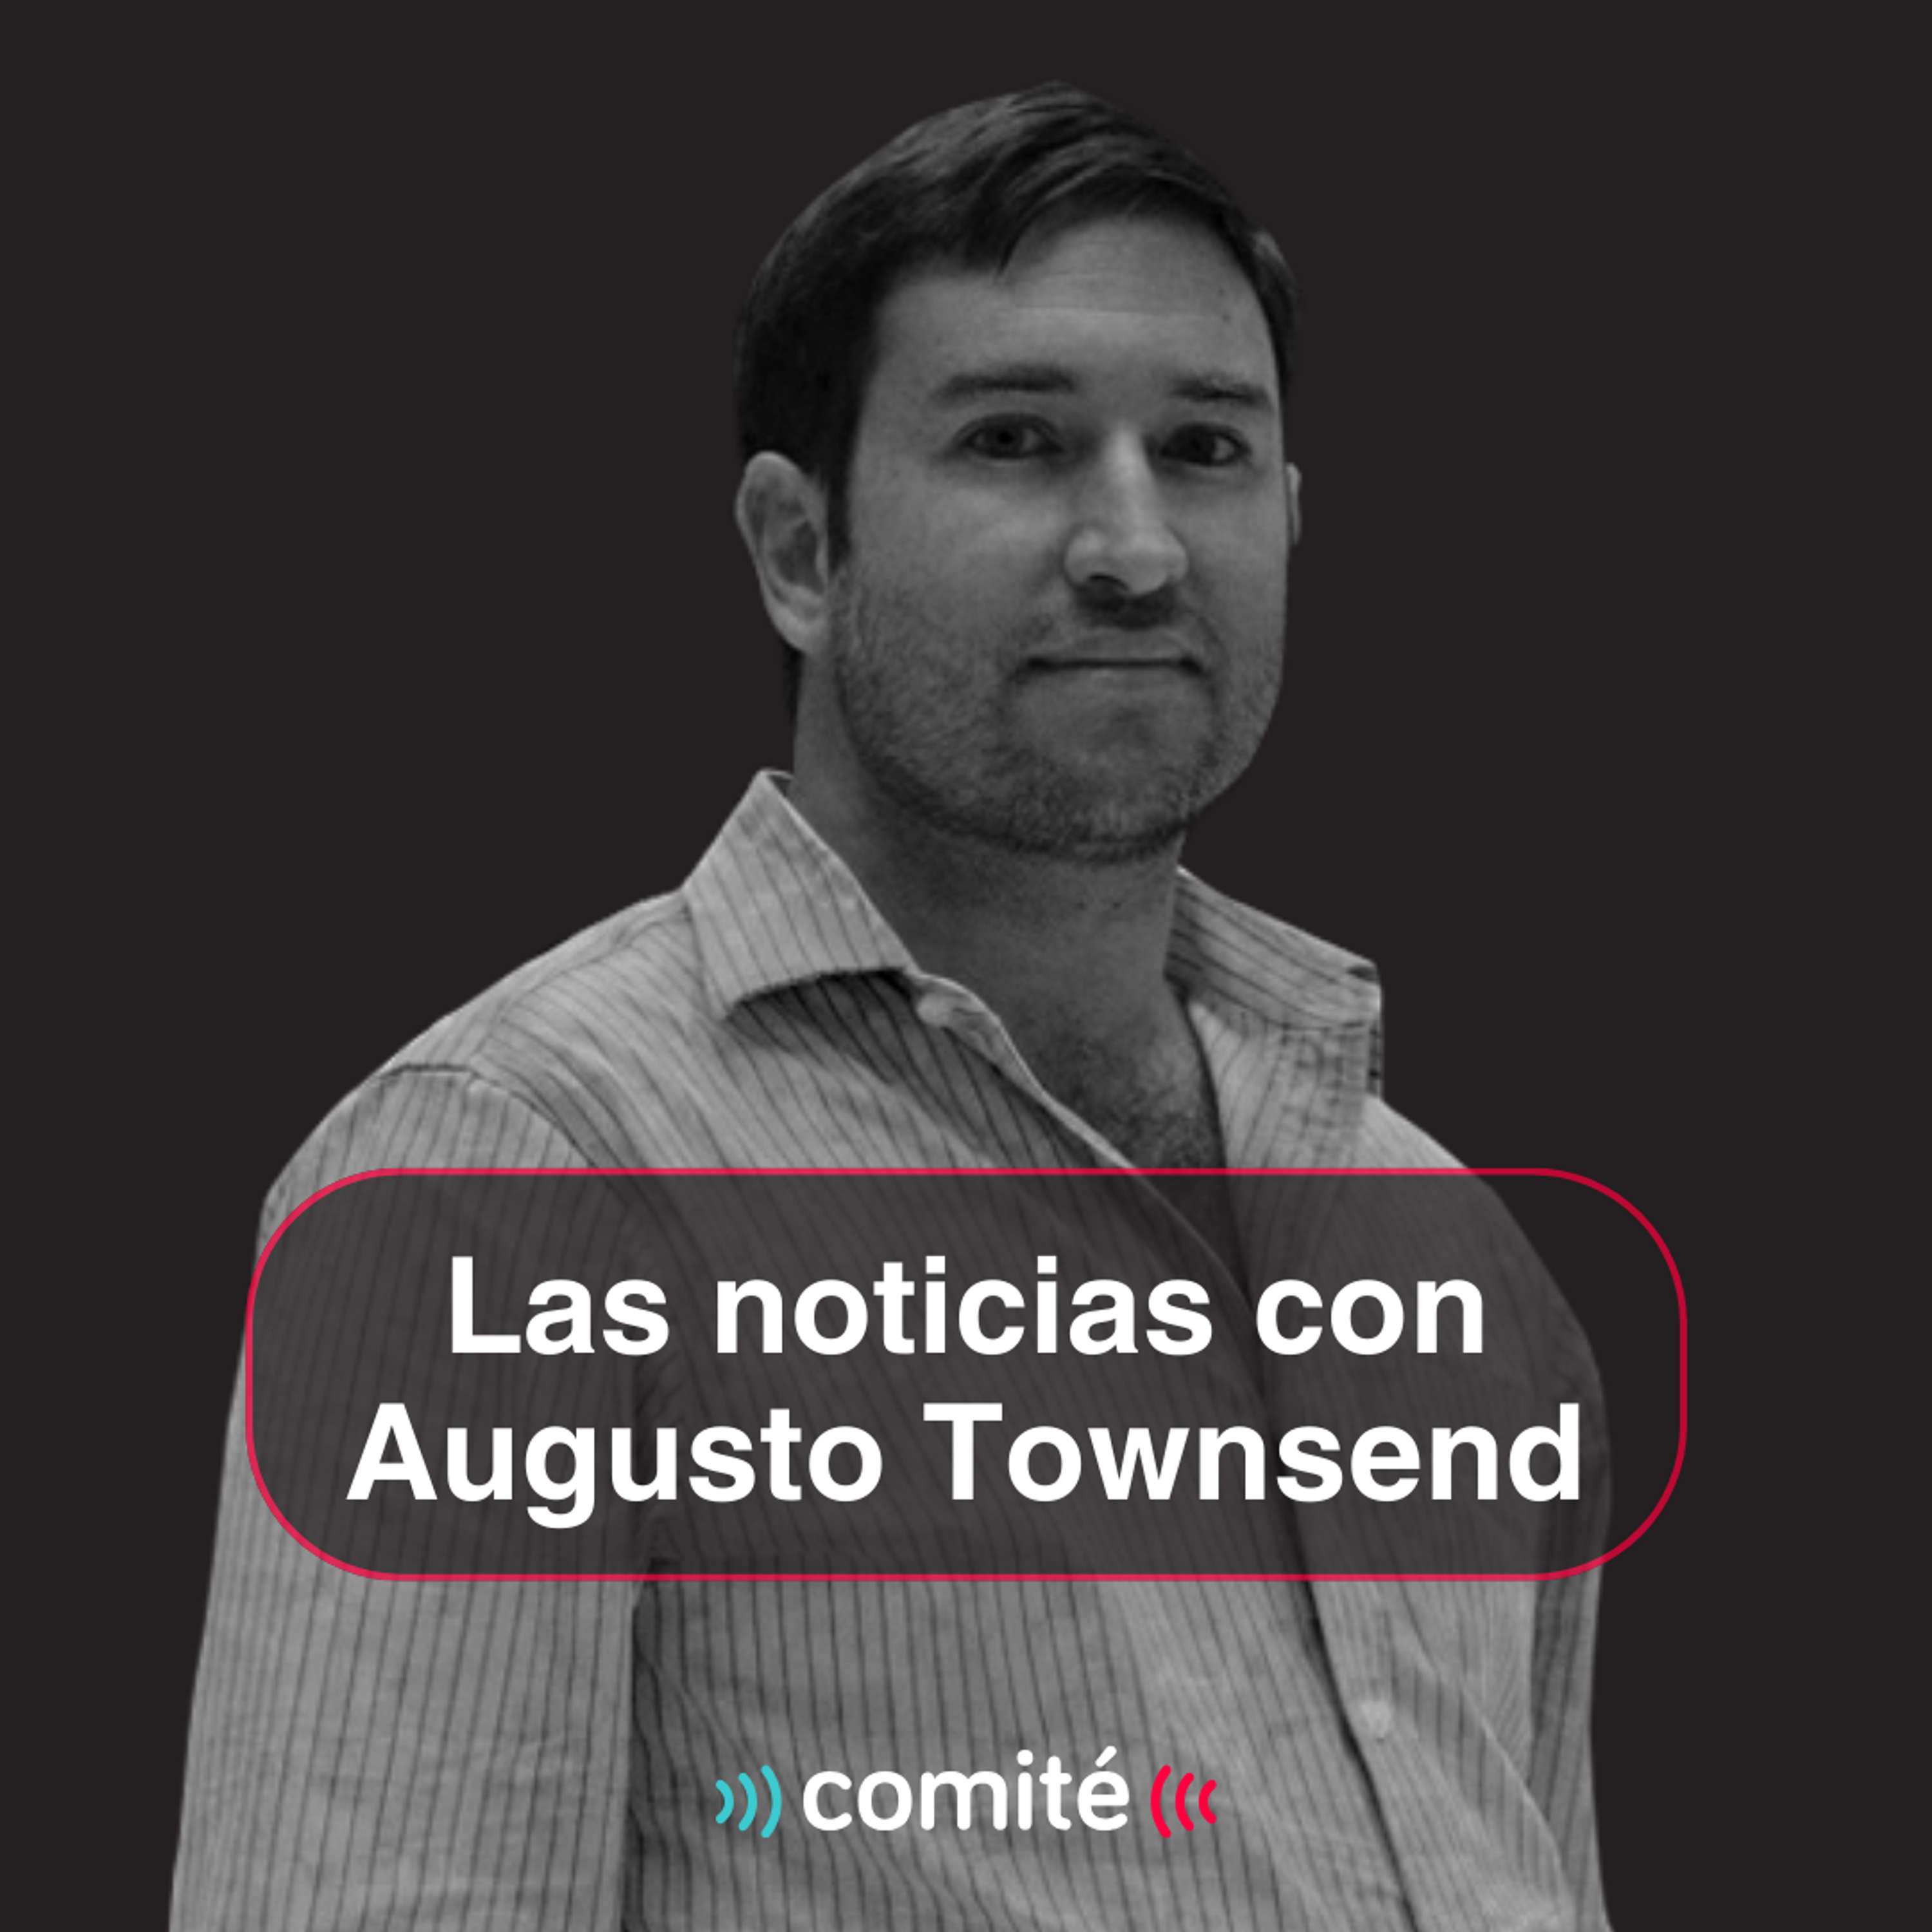 Allanan oficina de congresista Espinoza denunciado por malversar fondos del Congreso | Las noticias con Augusto Townsend